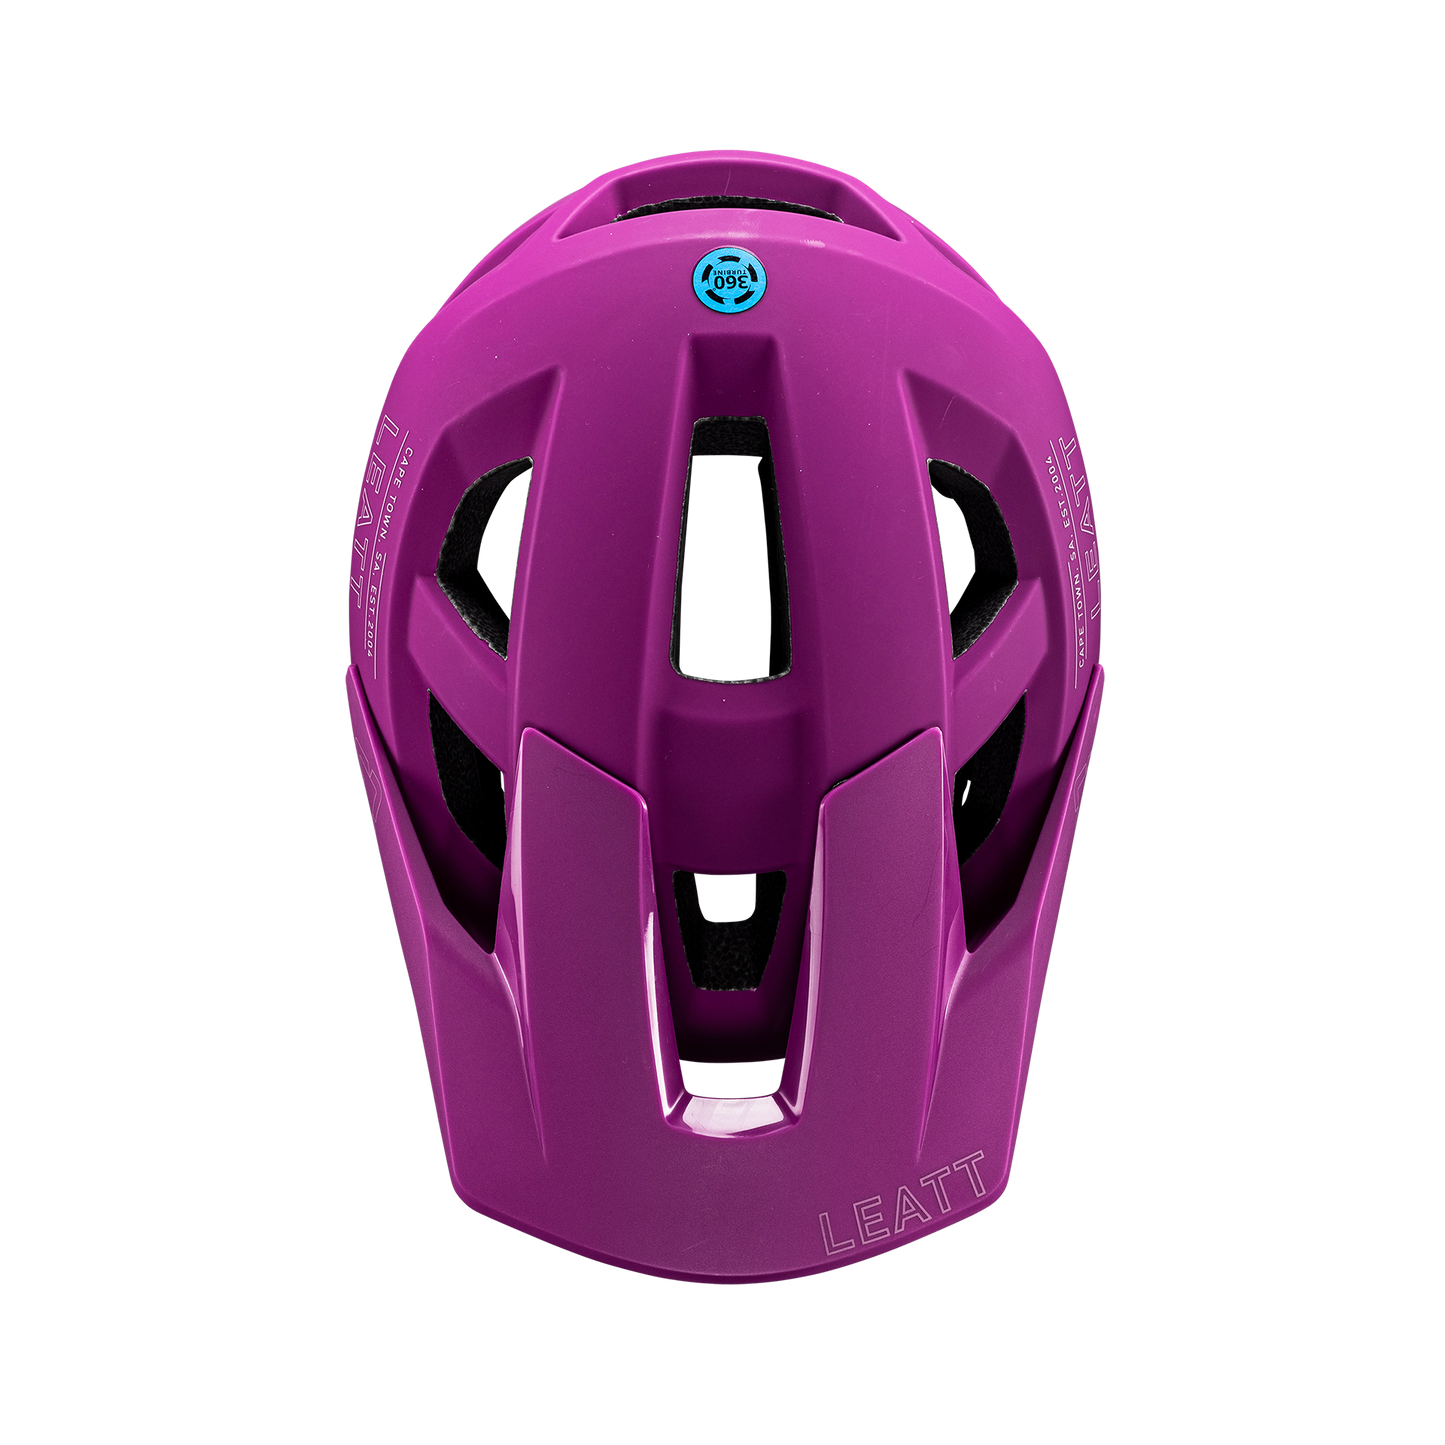 Helmet MTB AllMtn 2.0  - Purple